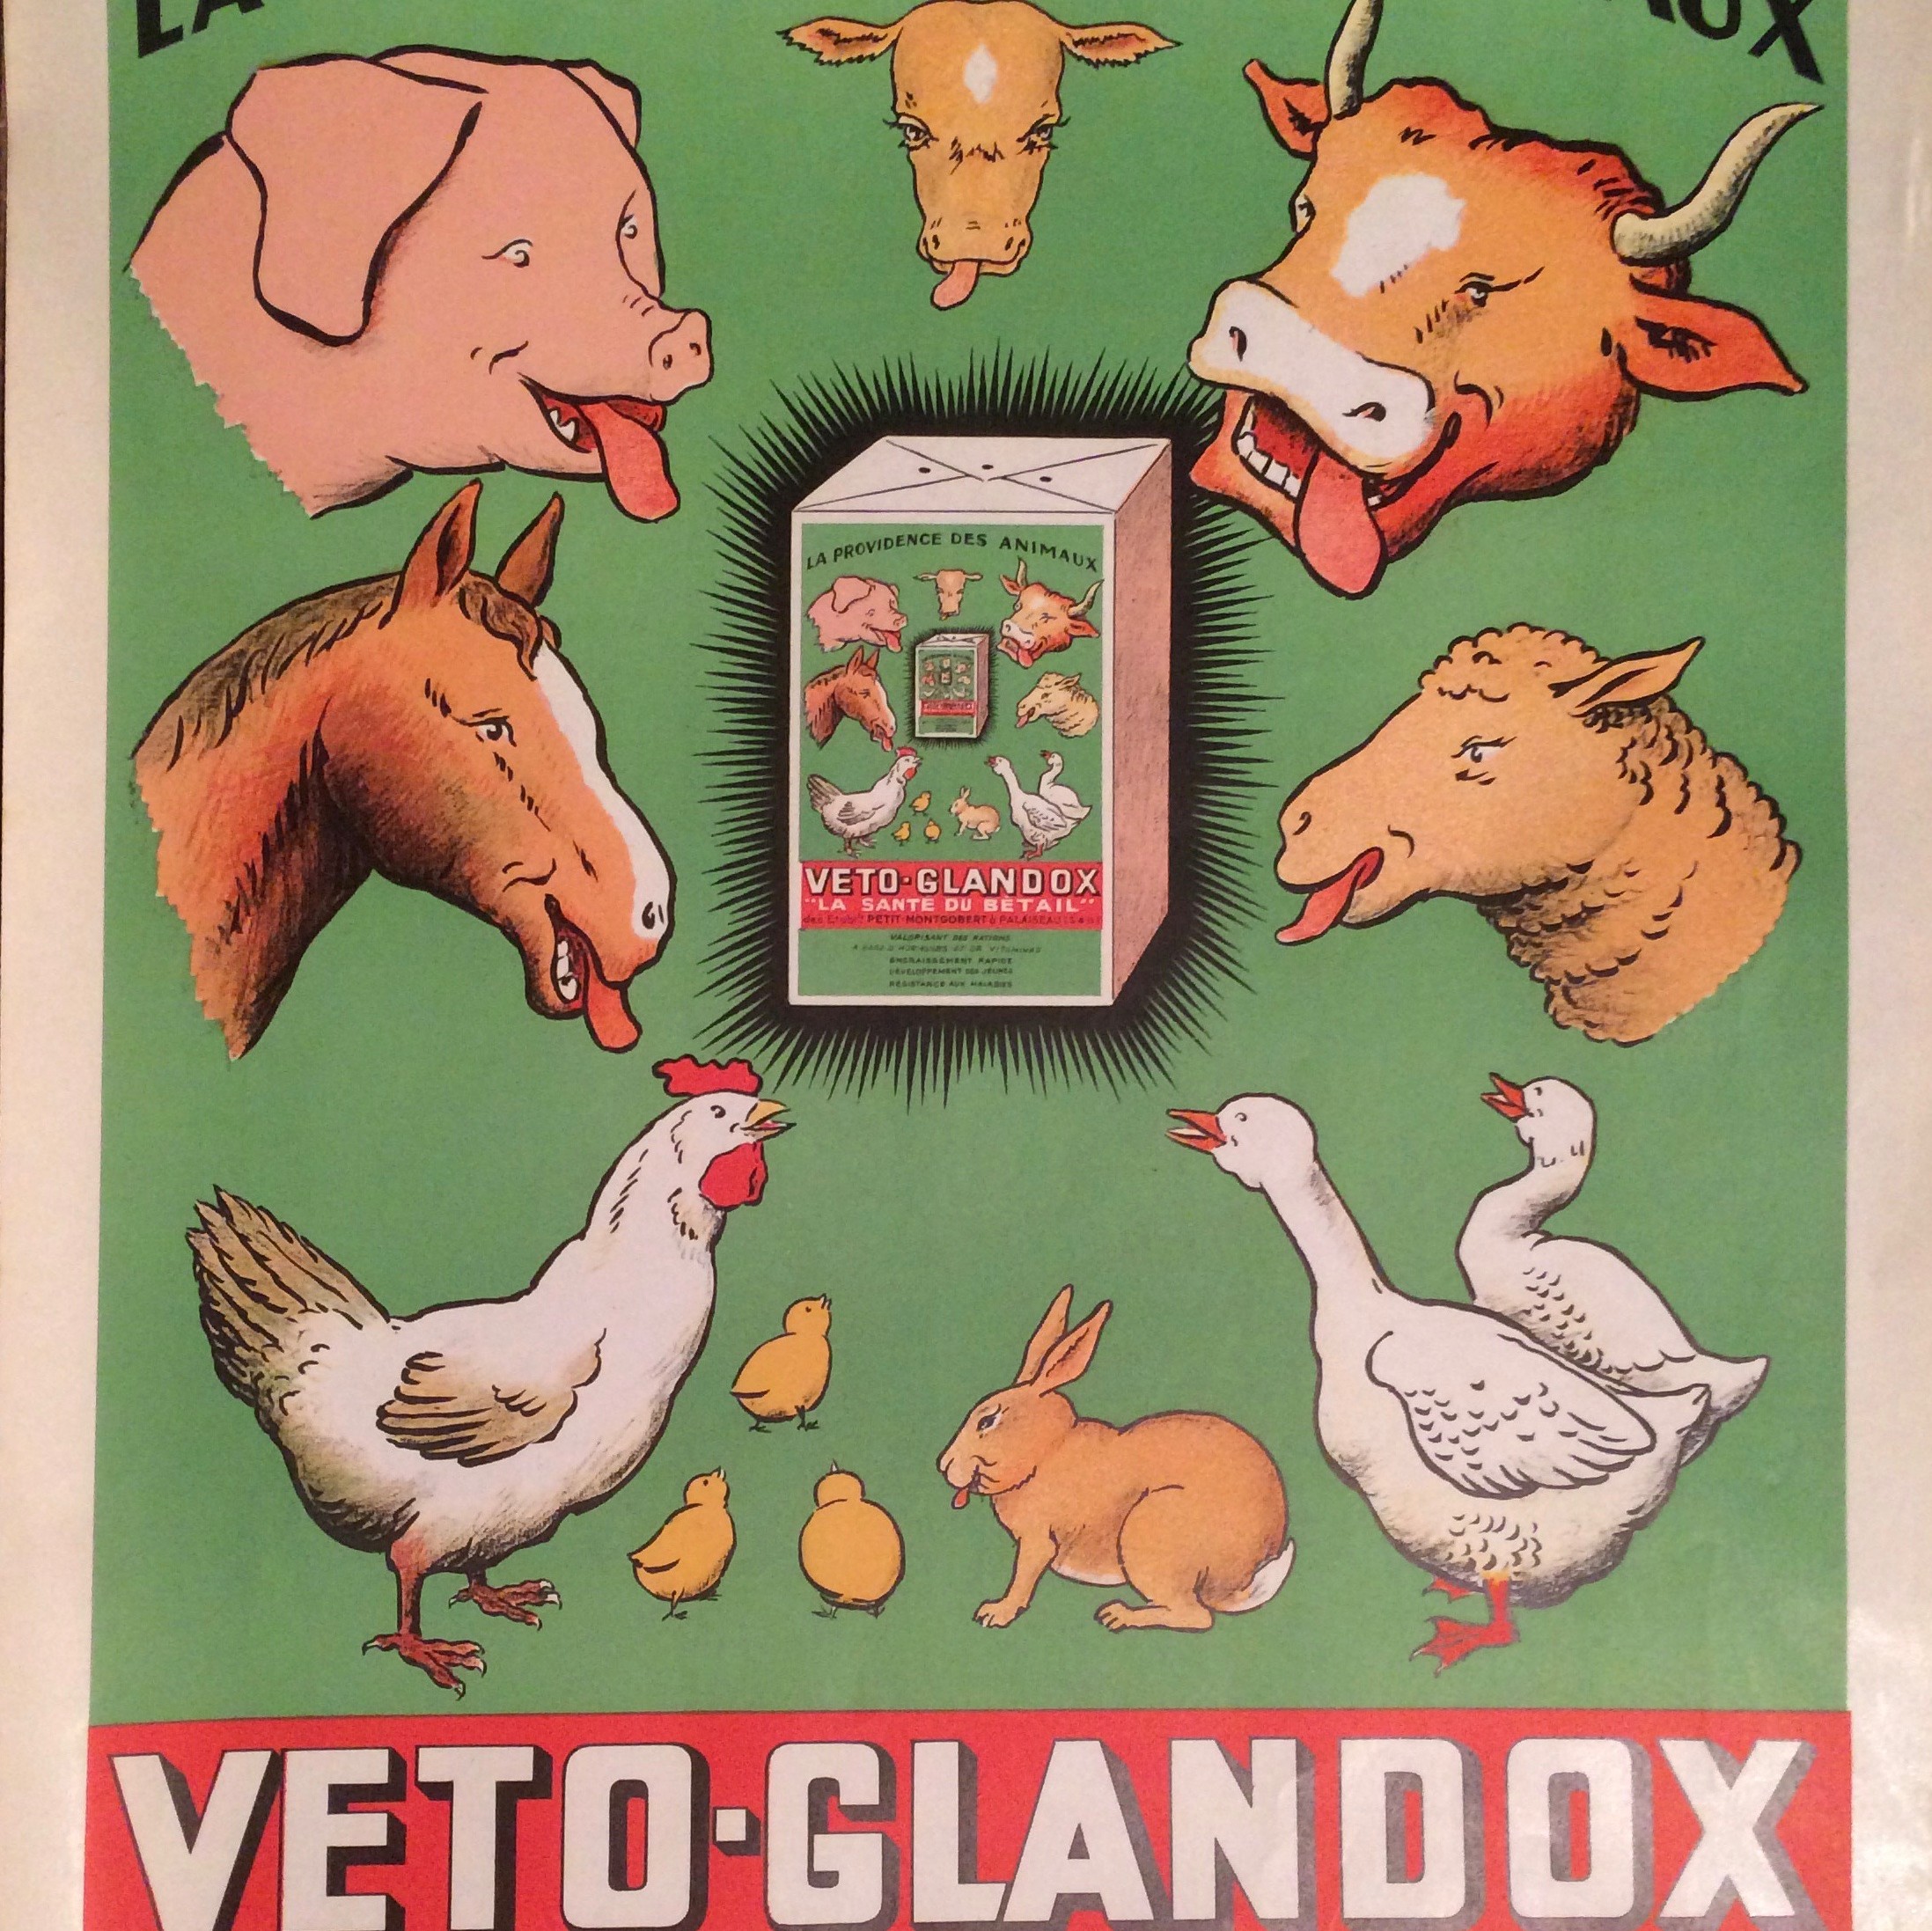 Affiche publicitaire Veto Glandox / aliment pour bétail